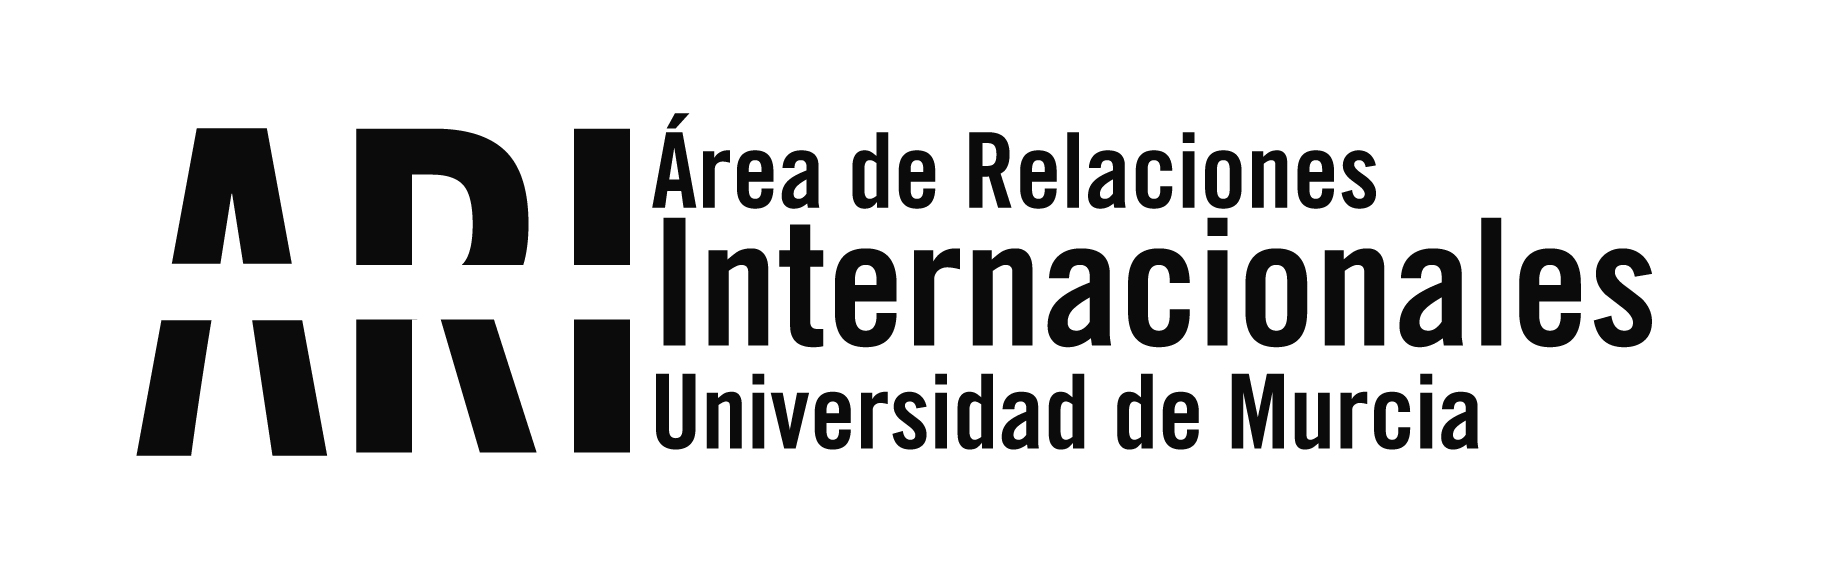 Propuesta de adjudicación plazas de intercambio para estudiantes UMU del programa ILA y ayudas económicas 2020-21 - Área de Relaciones Internacionales